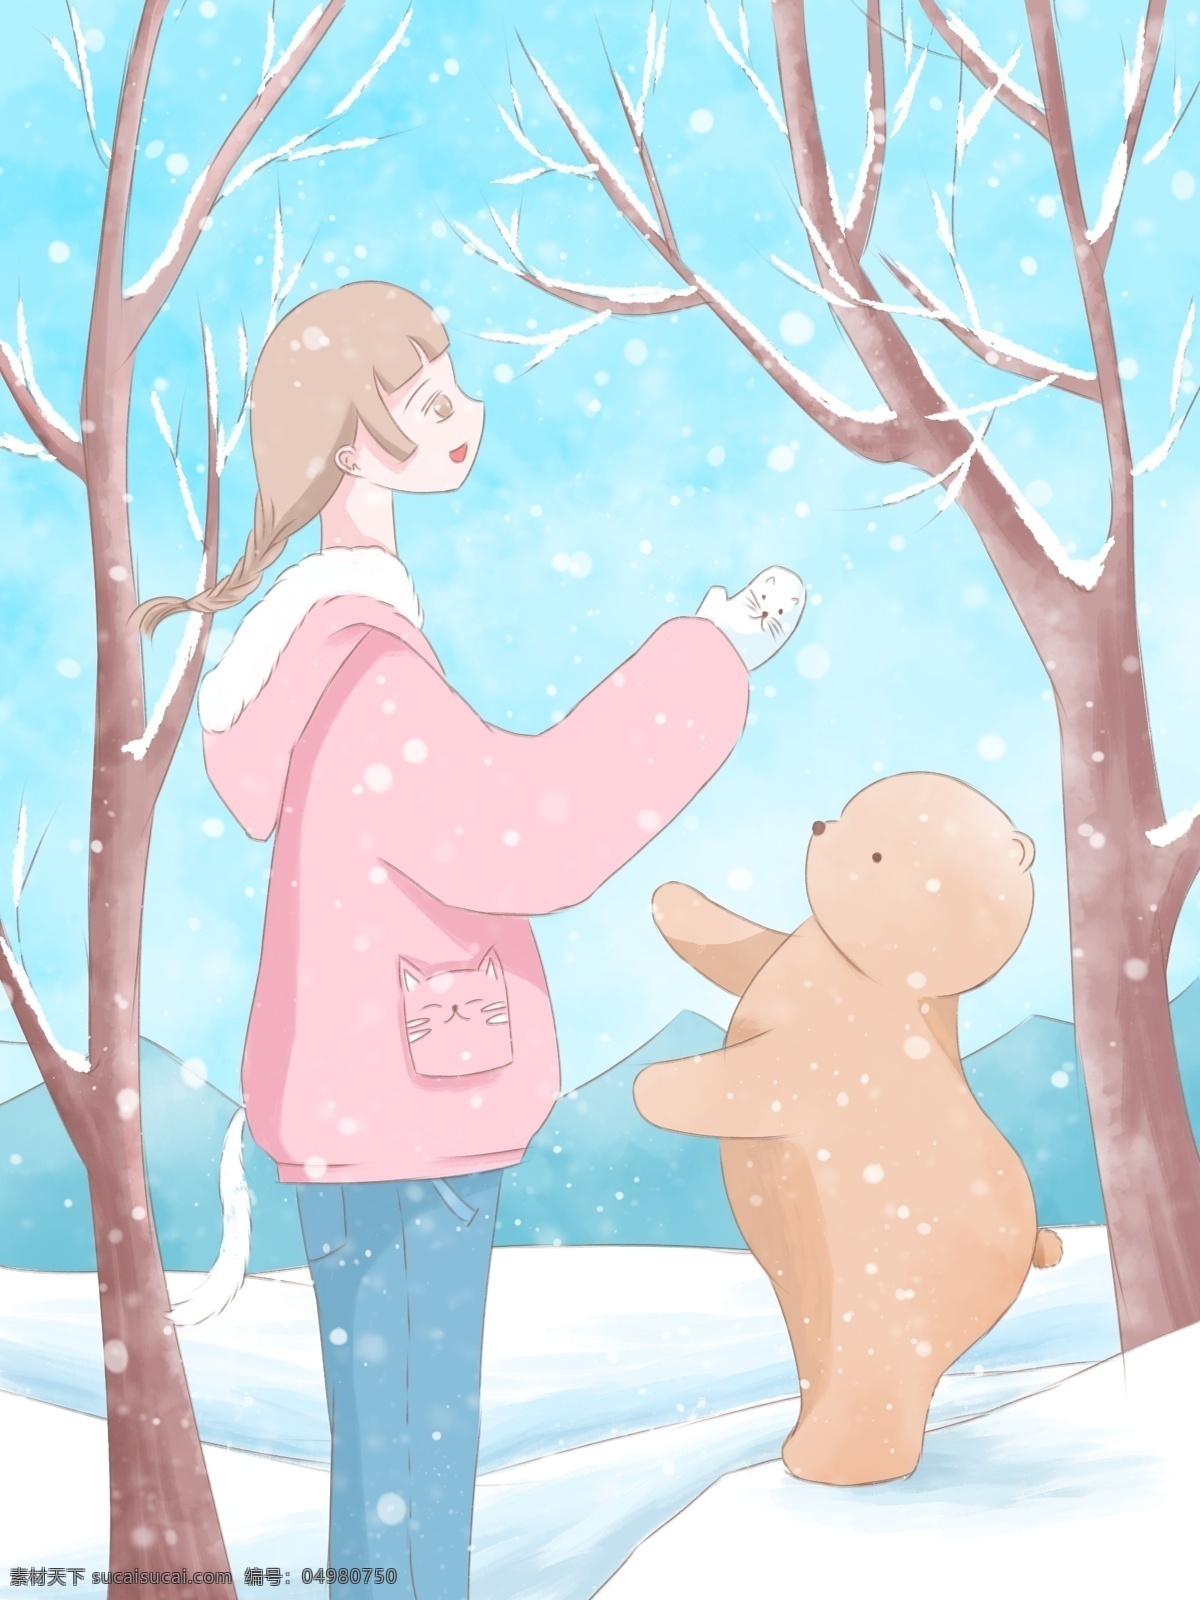 月 你好 清新 水彩 插画 小雪 中 女孩 小 熊 冬天 雪景 壁纸 1月你好 1月 雪地 雪 树 背景 日签